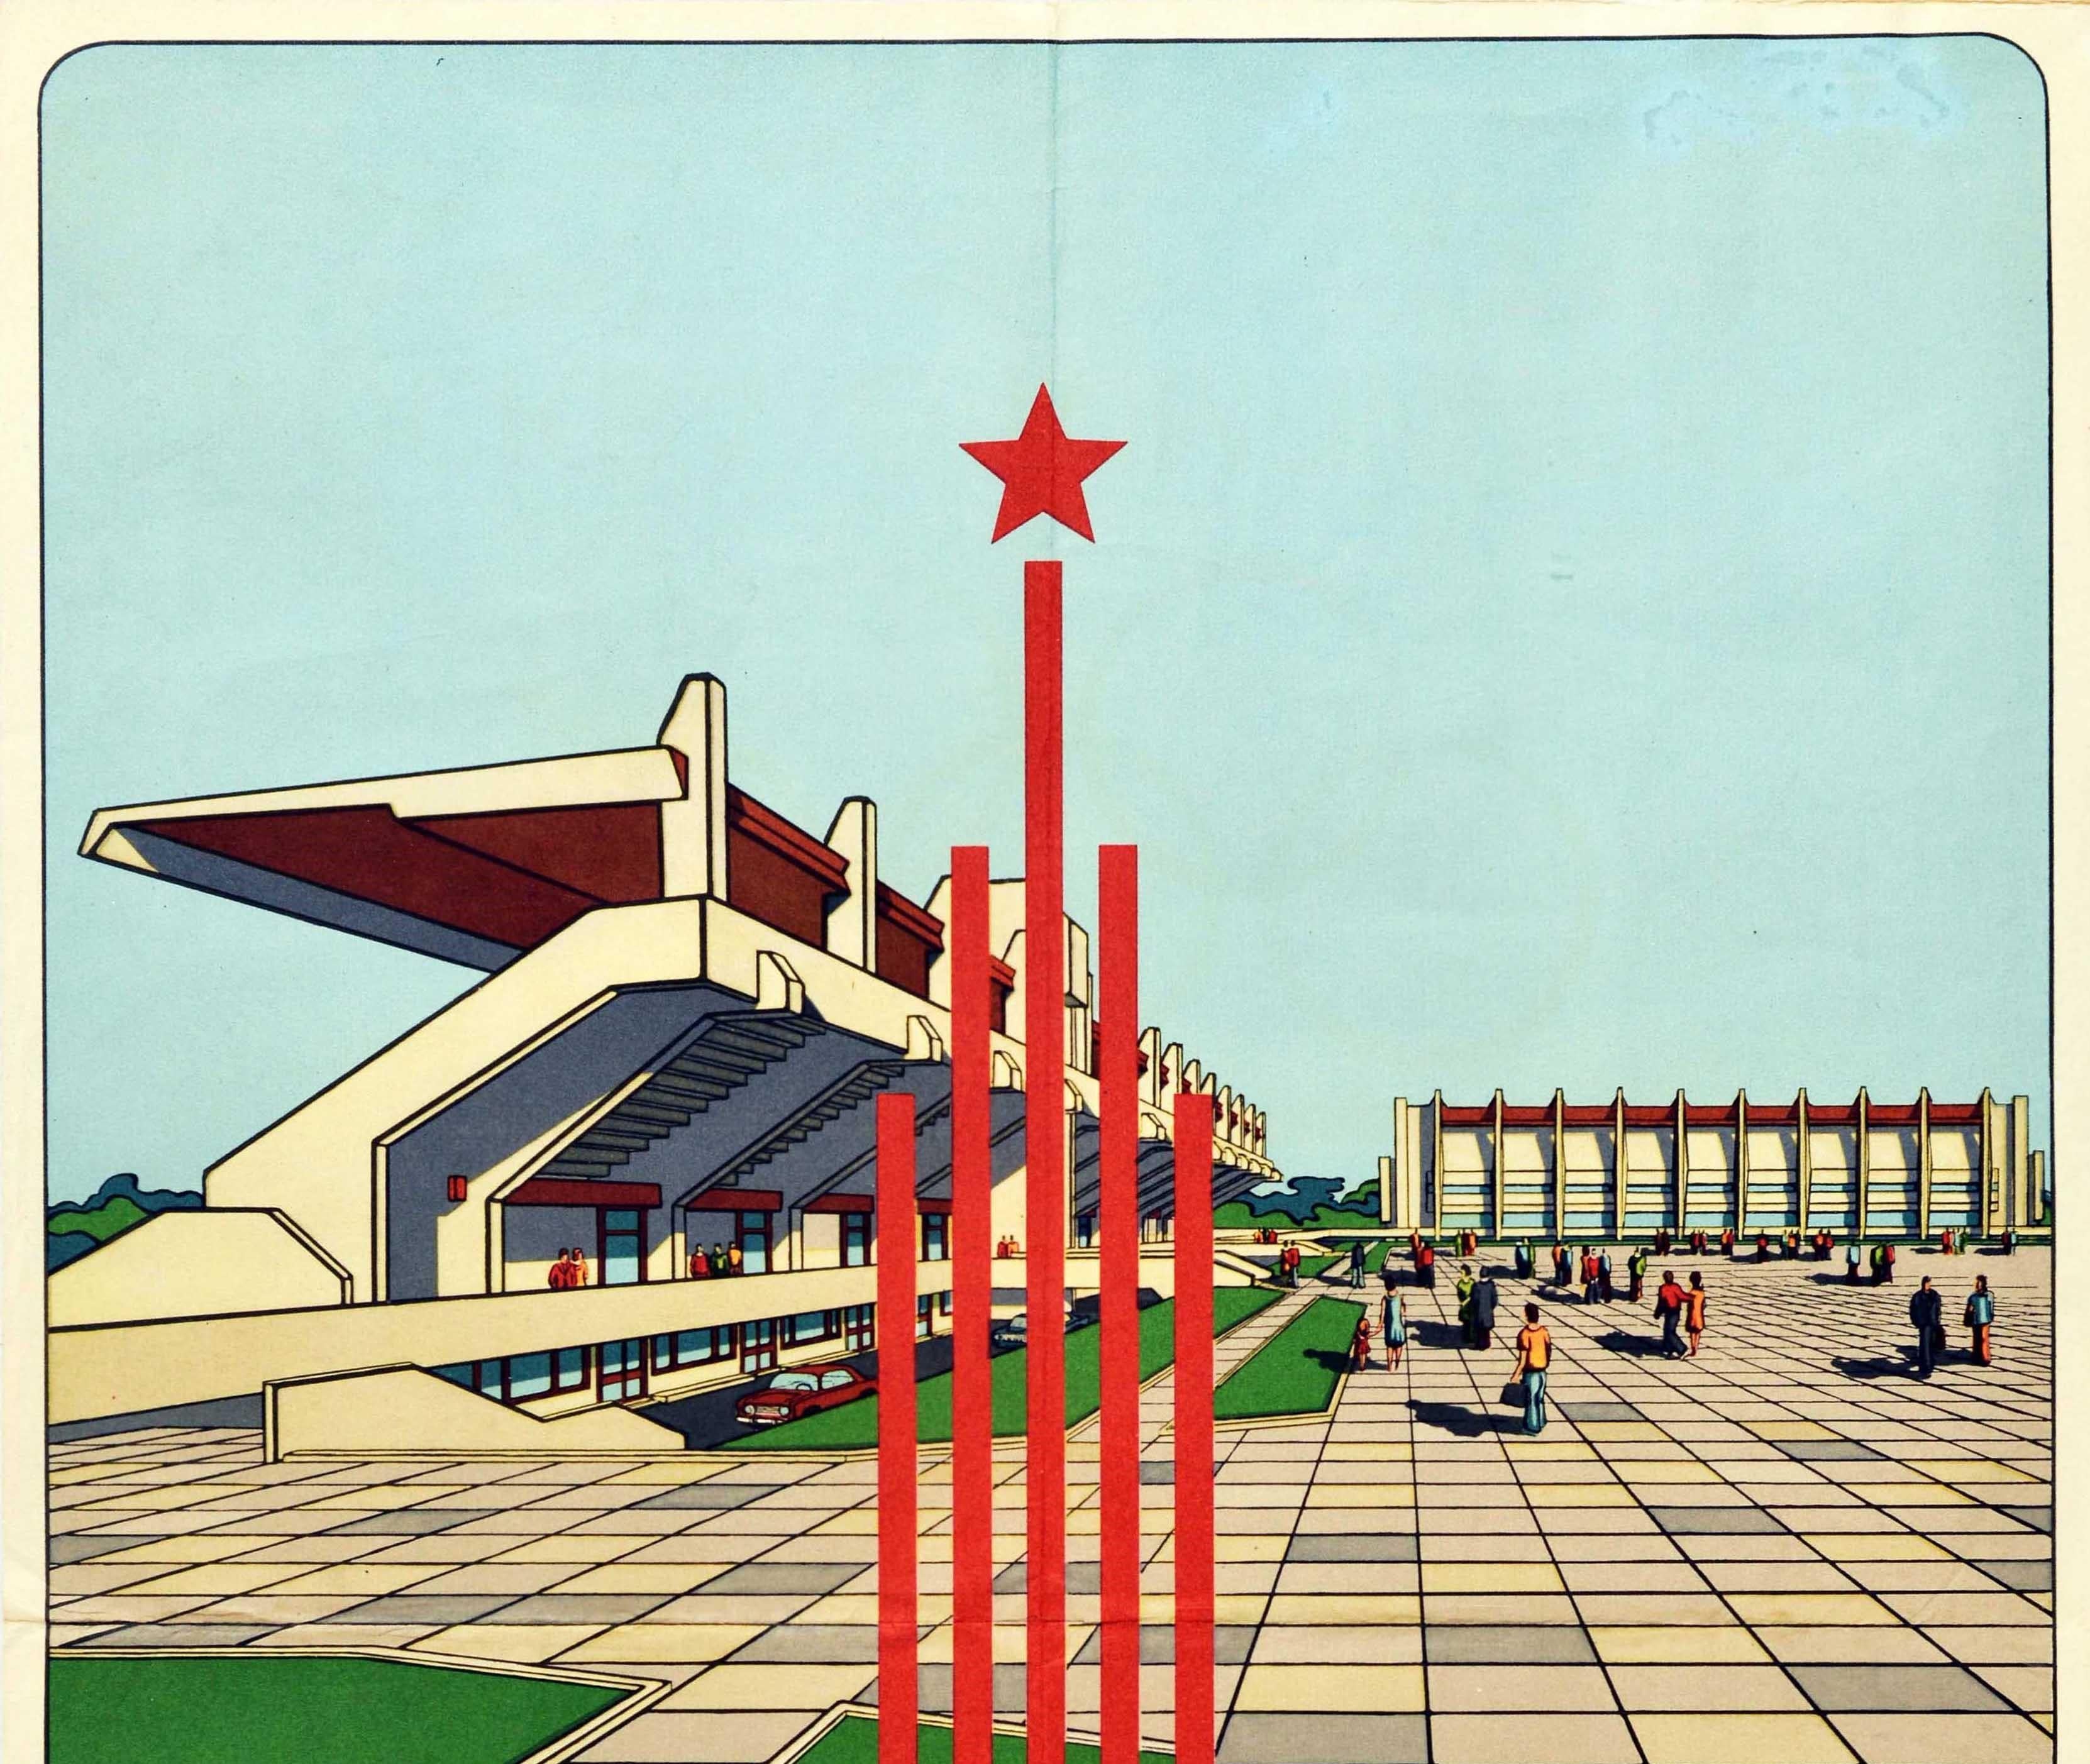 Affiche originale d'un événement sportif vintage pour les compétitions équestres des Jeux olympiques de Moscou de 1980. On y voit une image futuriste de personnes marchant autour de la zone pavée avec des bordures de gazon à côté des sièges du stade